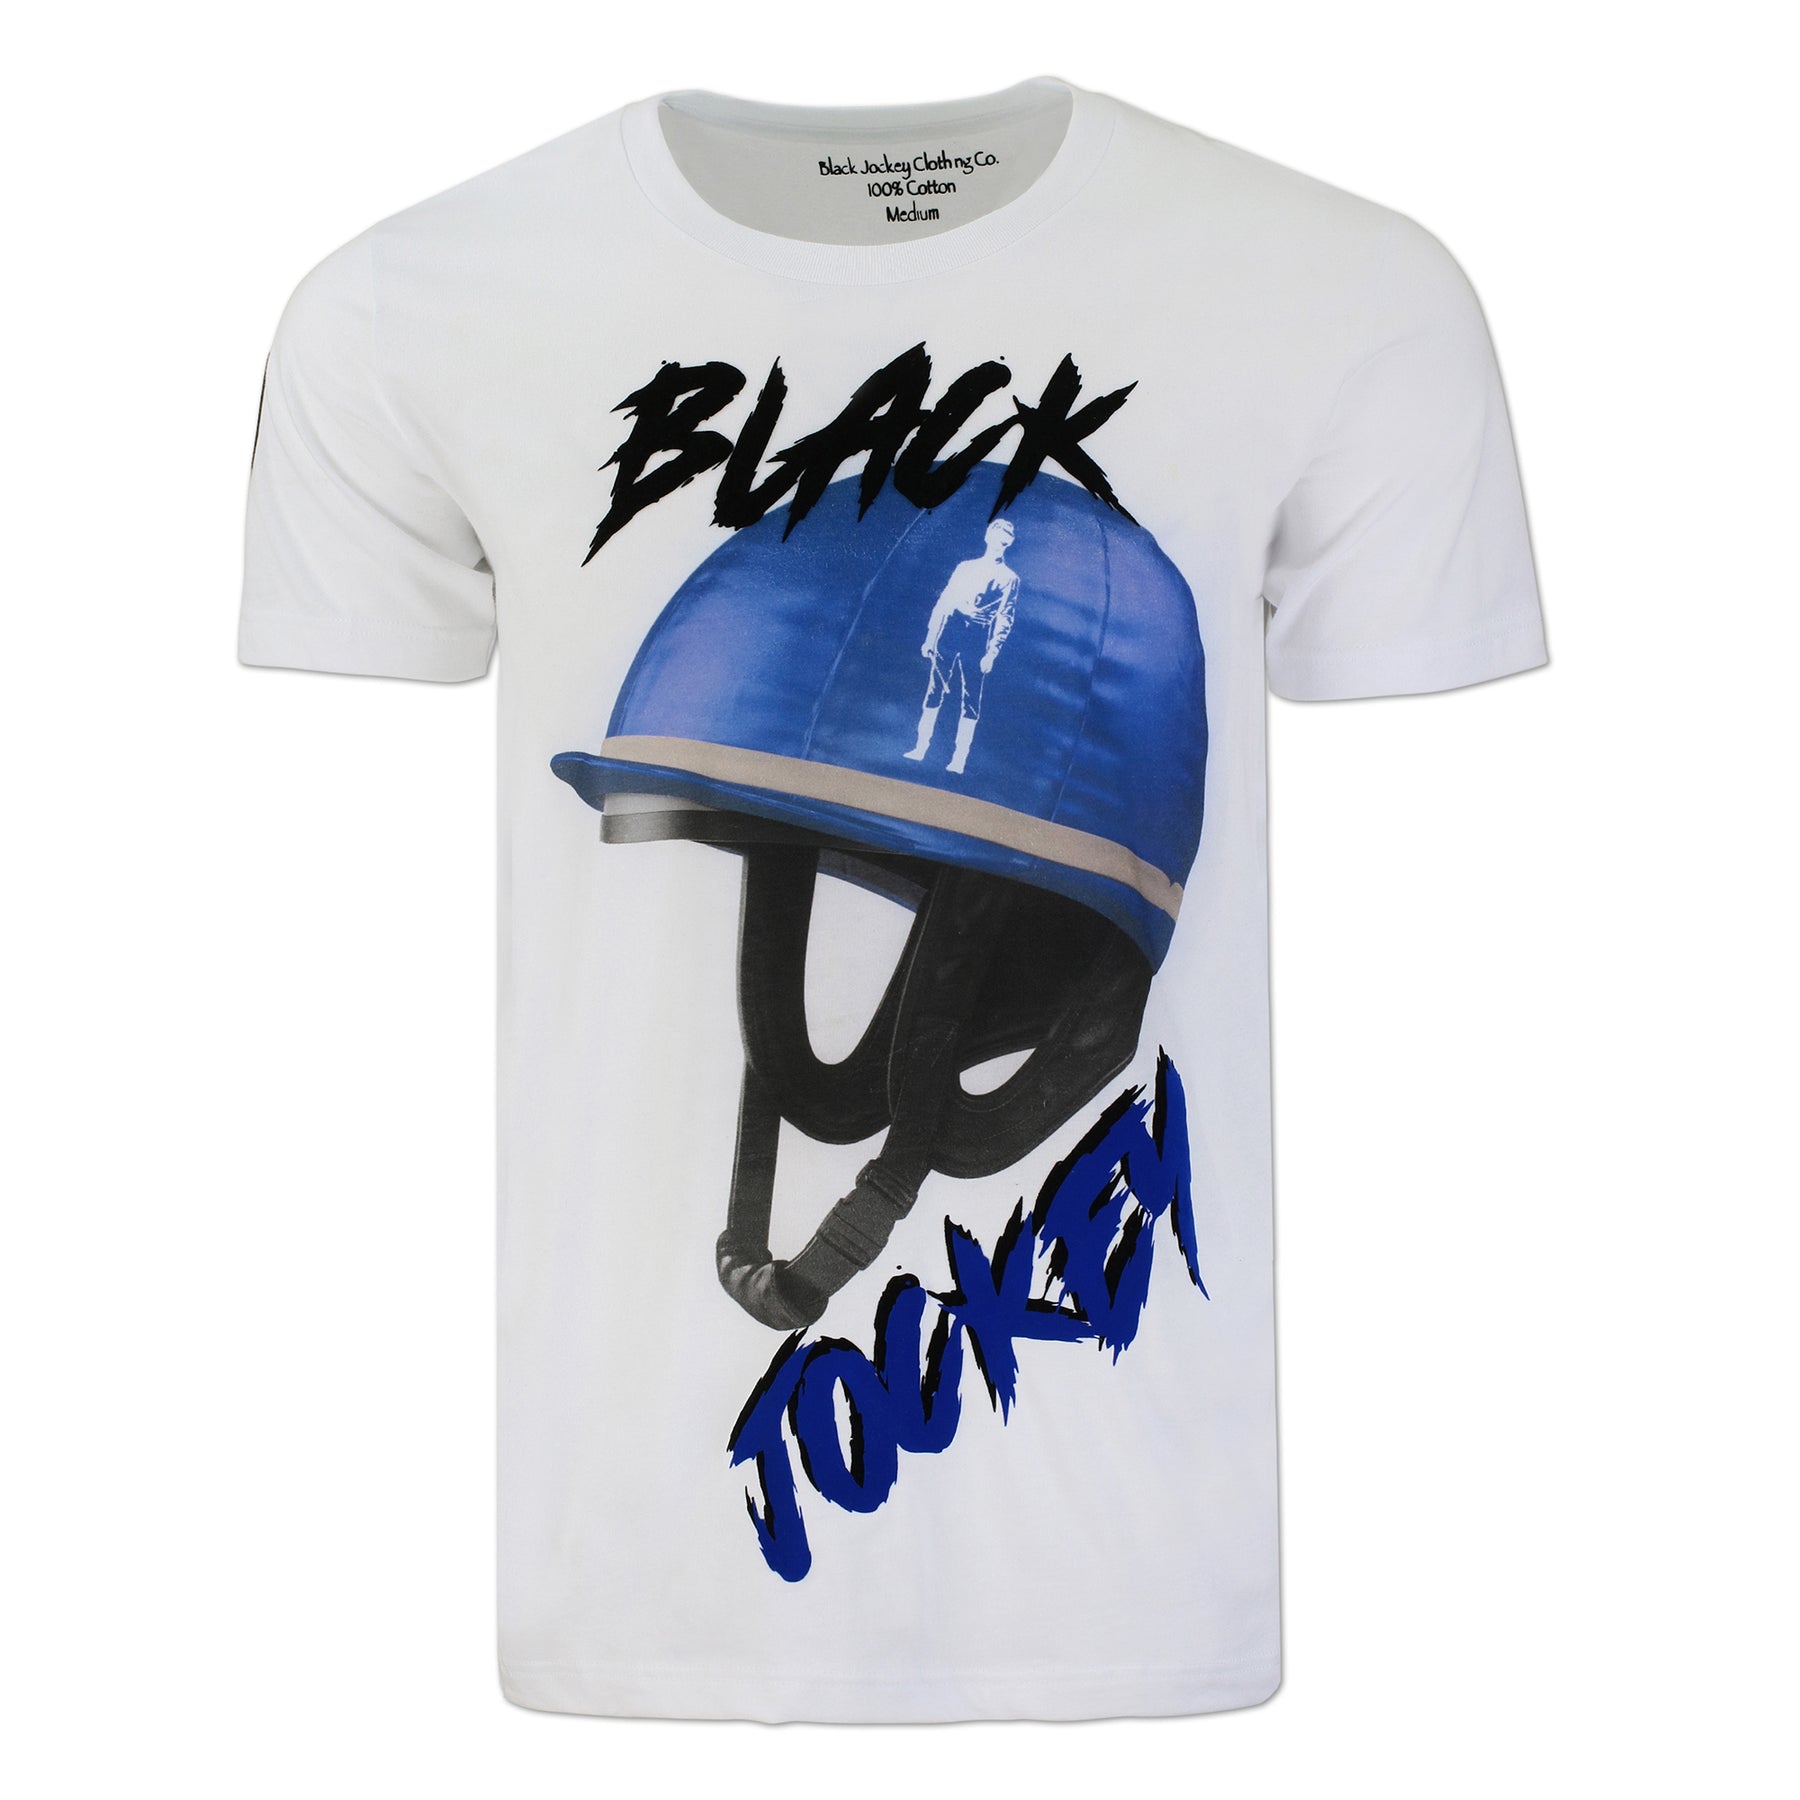 Black Helmet Tee – Black Jockey Clothing